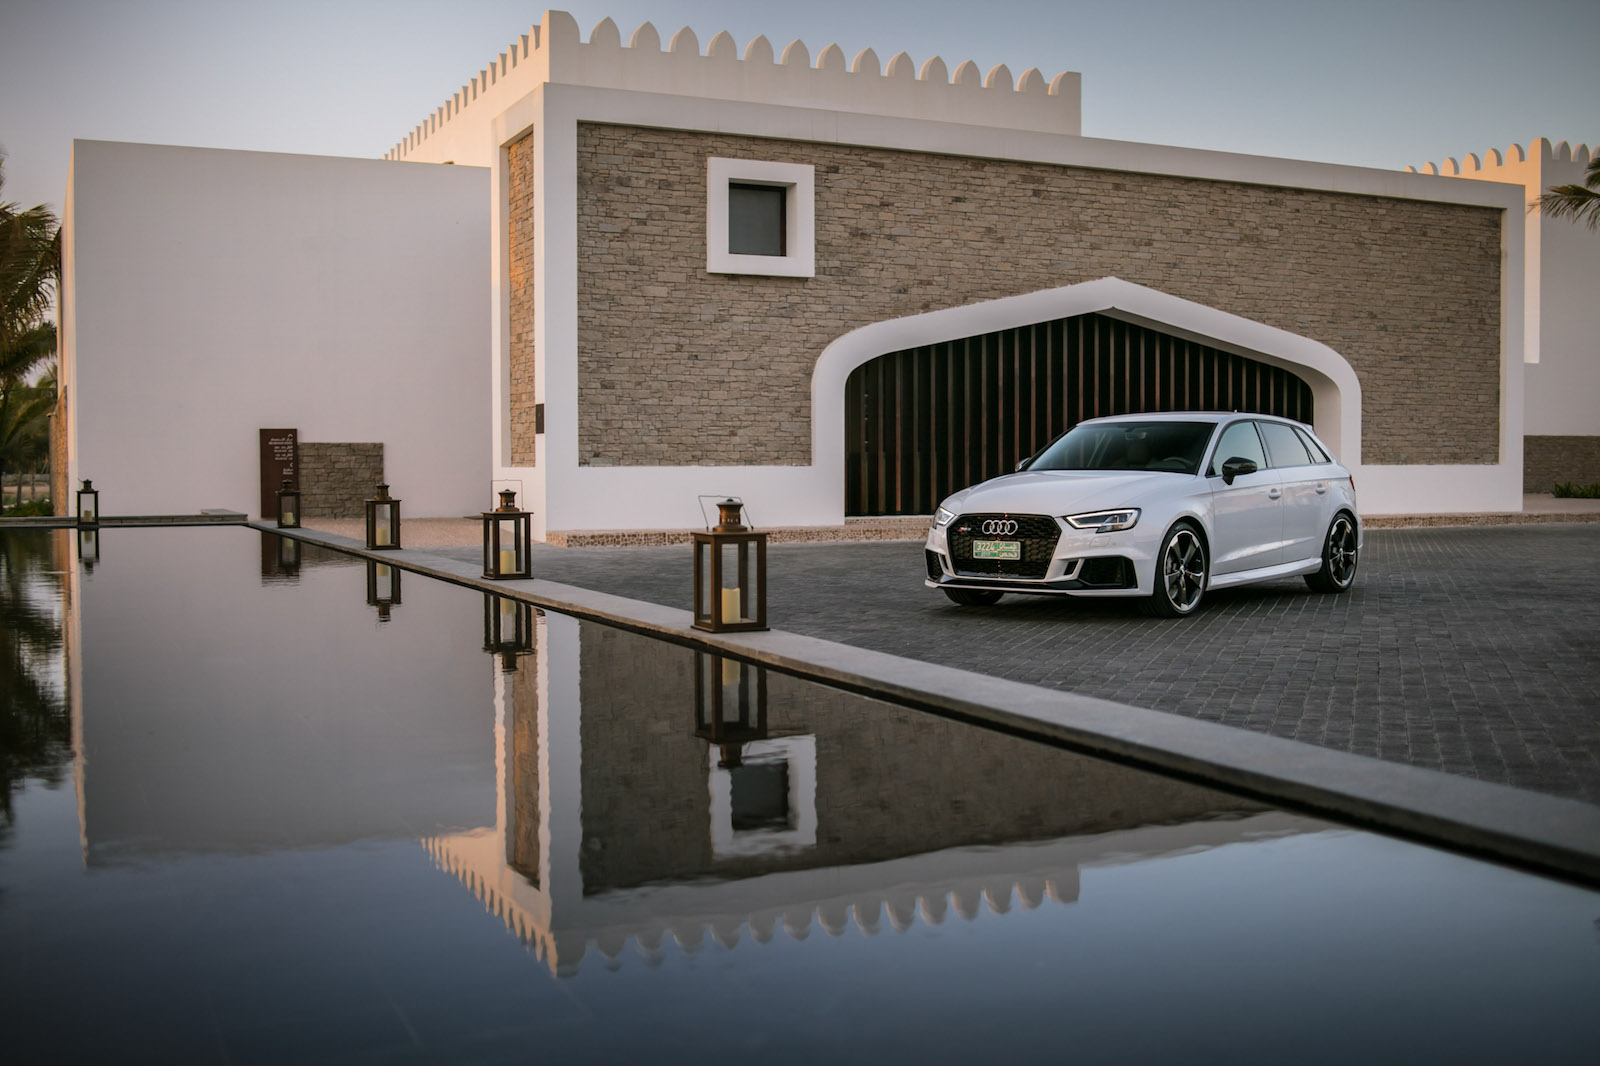 Staub aufwirbeln auf den Straßen des Sultanats Oman: Das ist der neue RS3 10